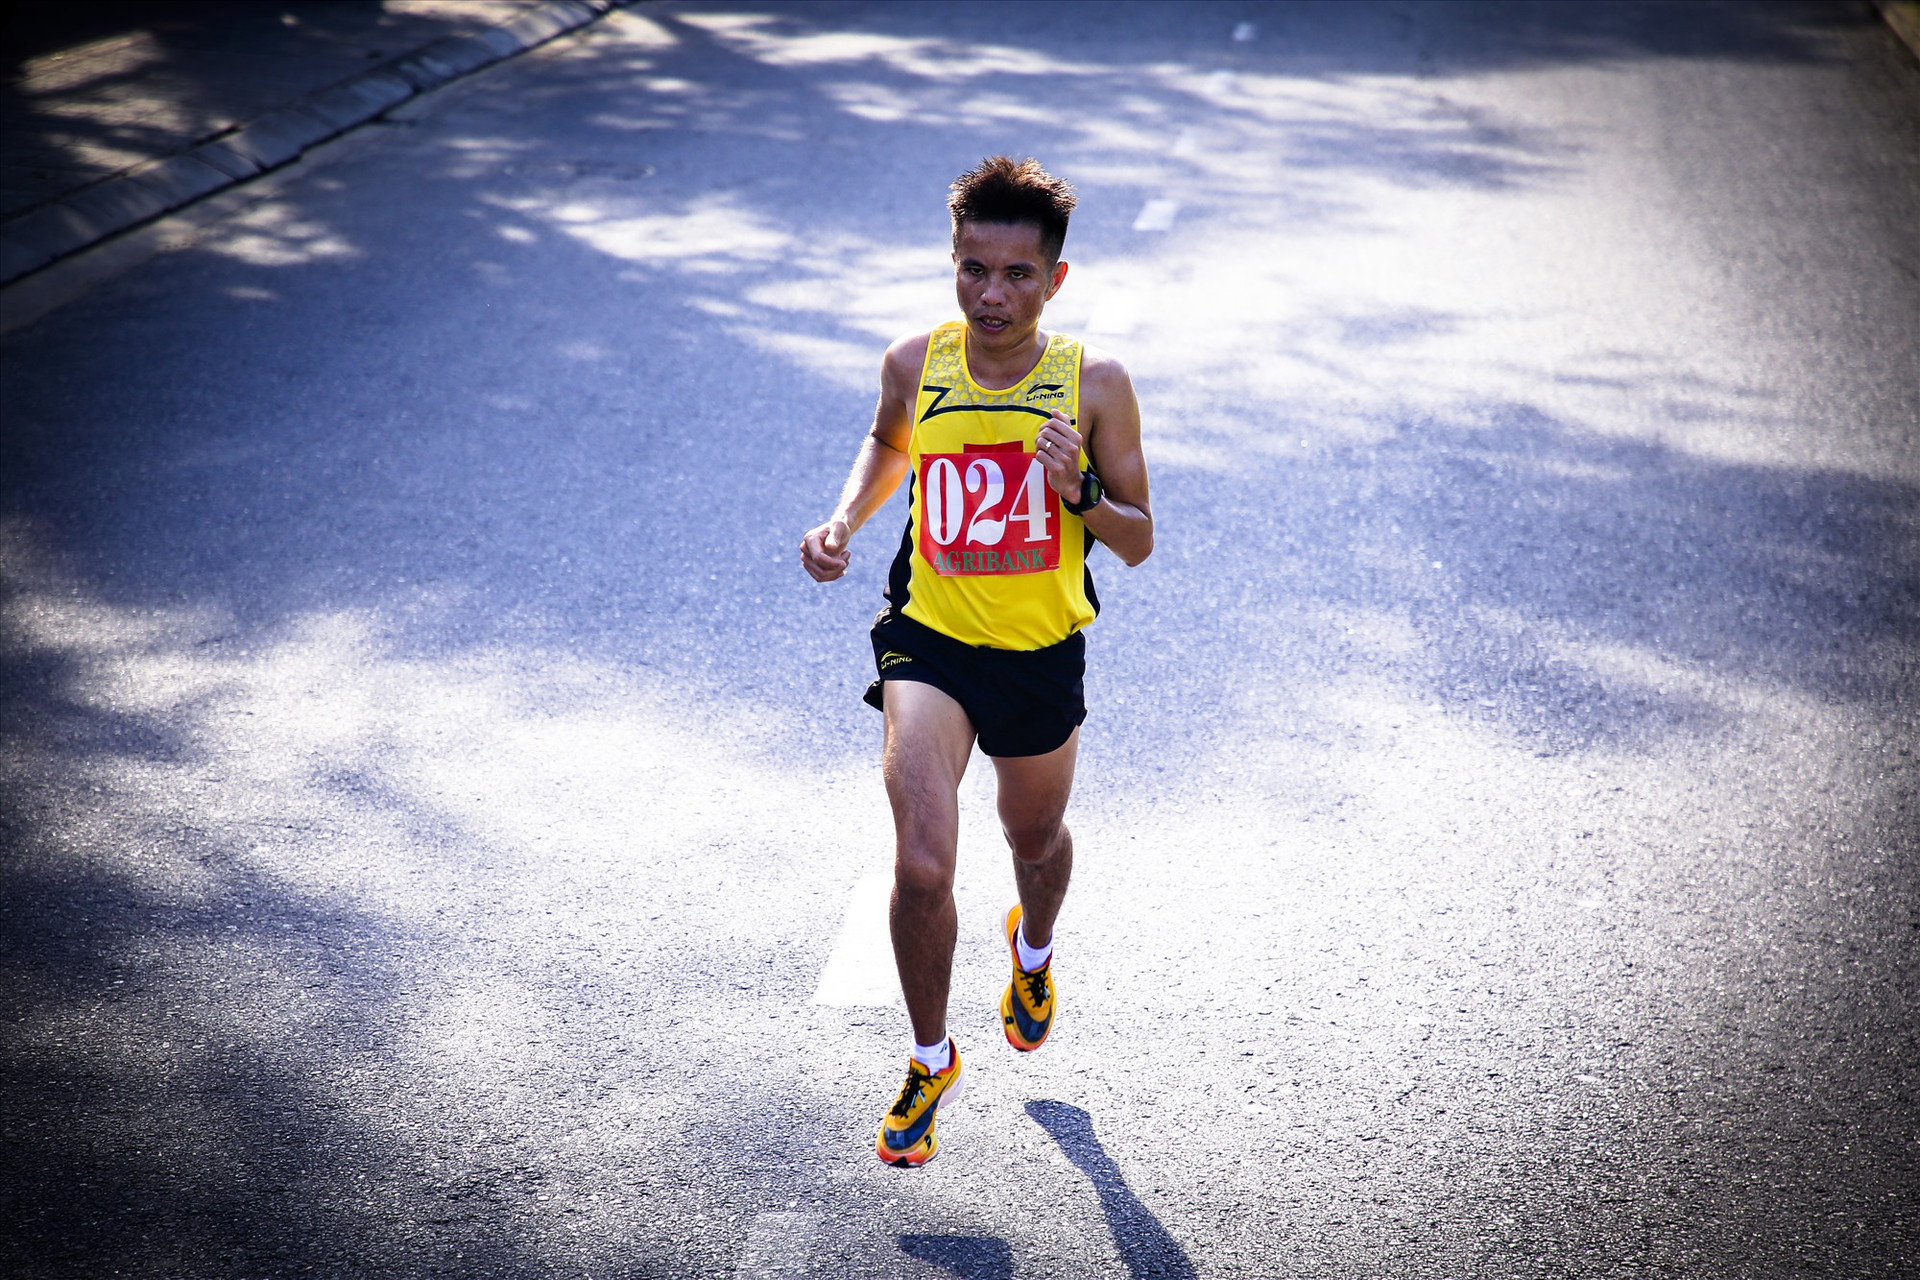 VĐV Lê Văn Thao chứng tỏ được đẳng cấp và kinh nghiệm của mình trong đường chạy 10.000m nam. Ảnh: THÀNH CÔNG